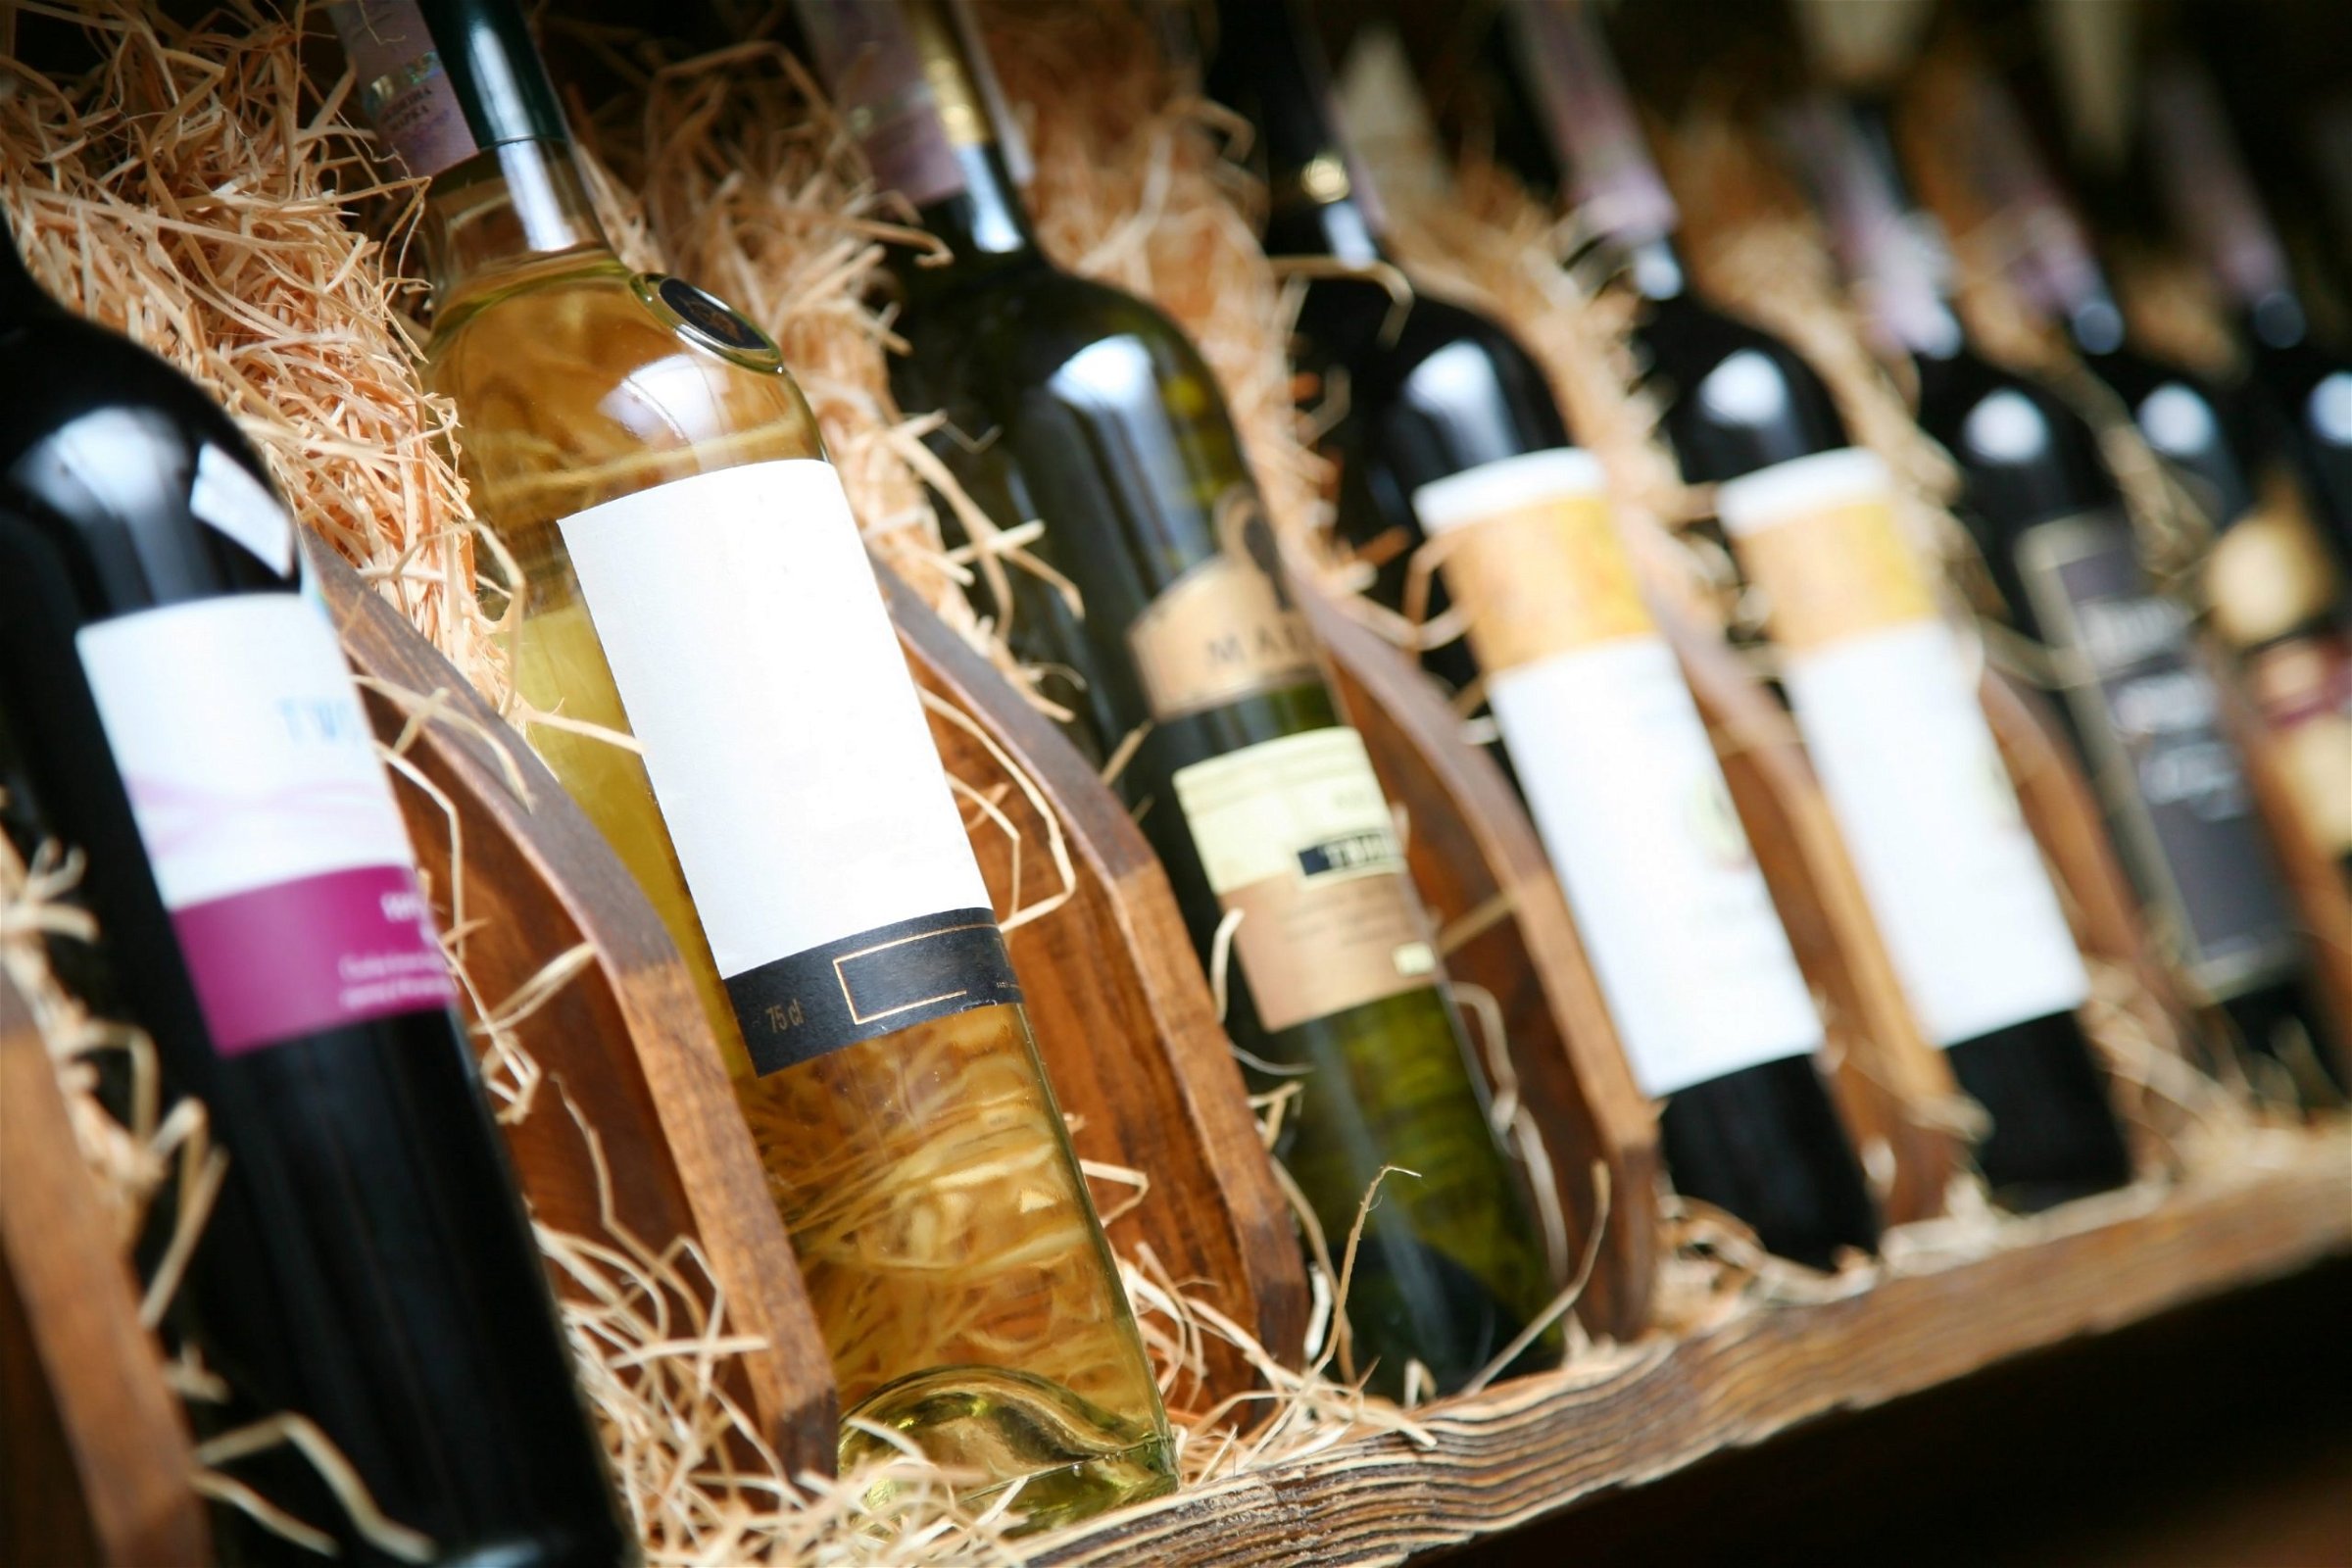 Stored wine bottles